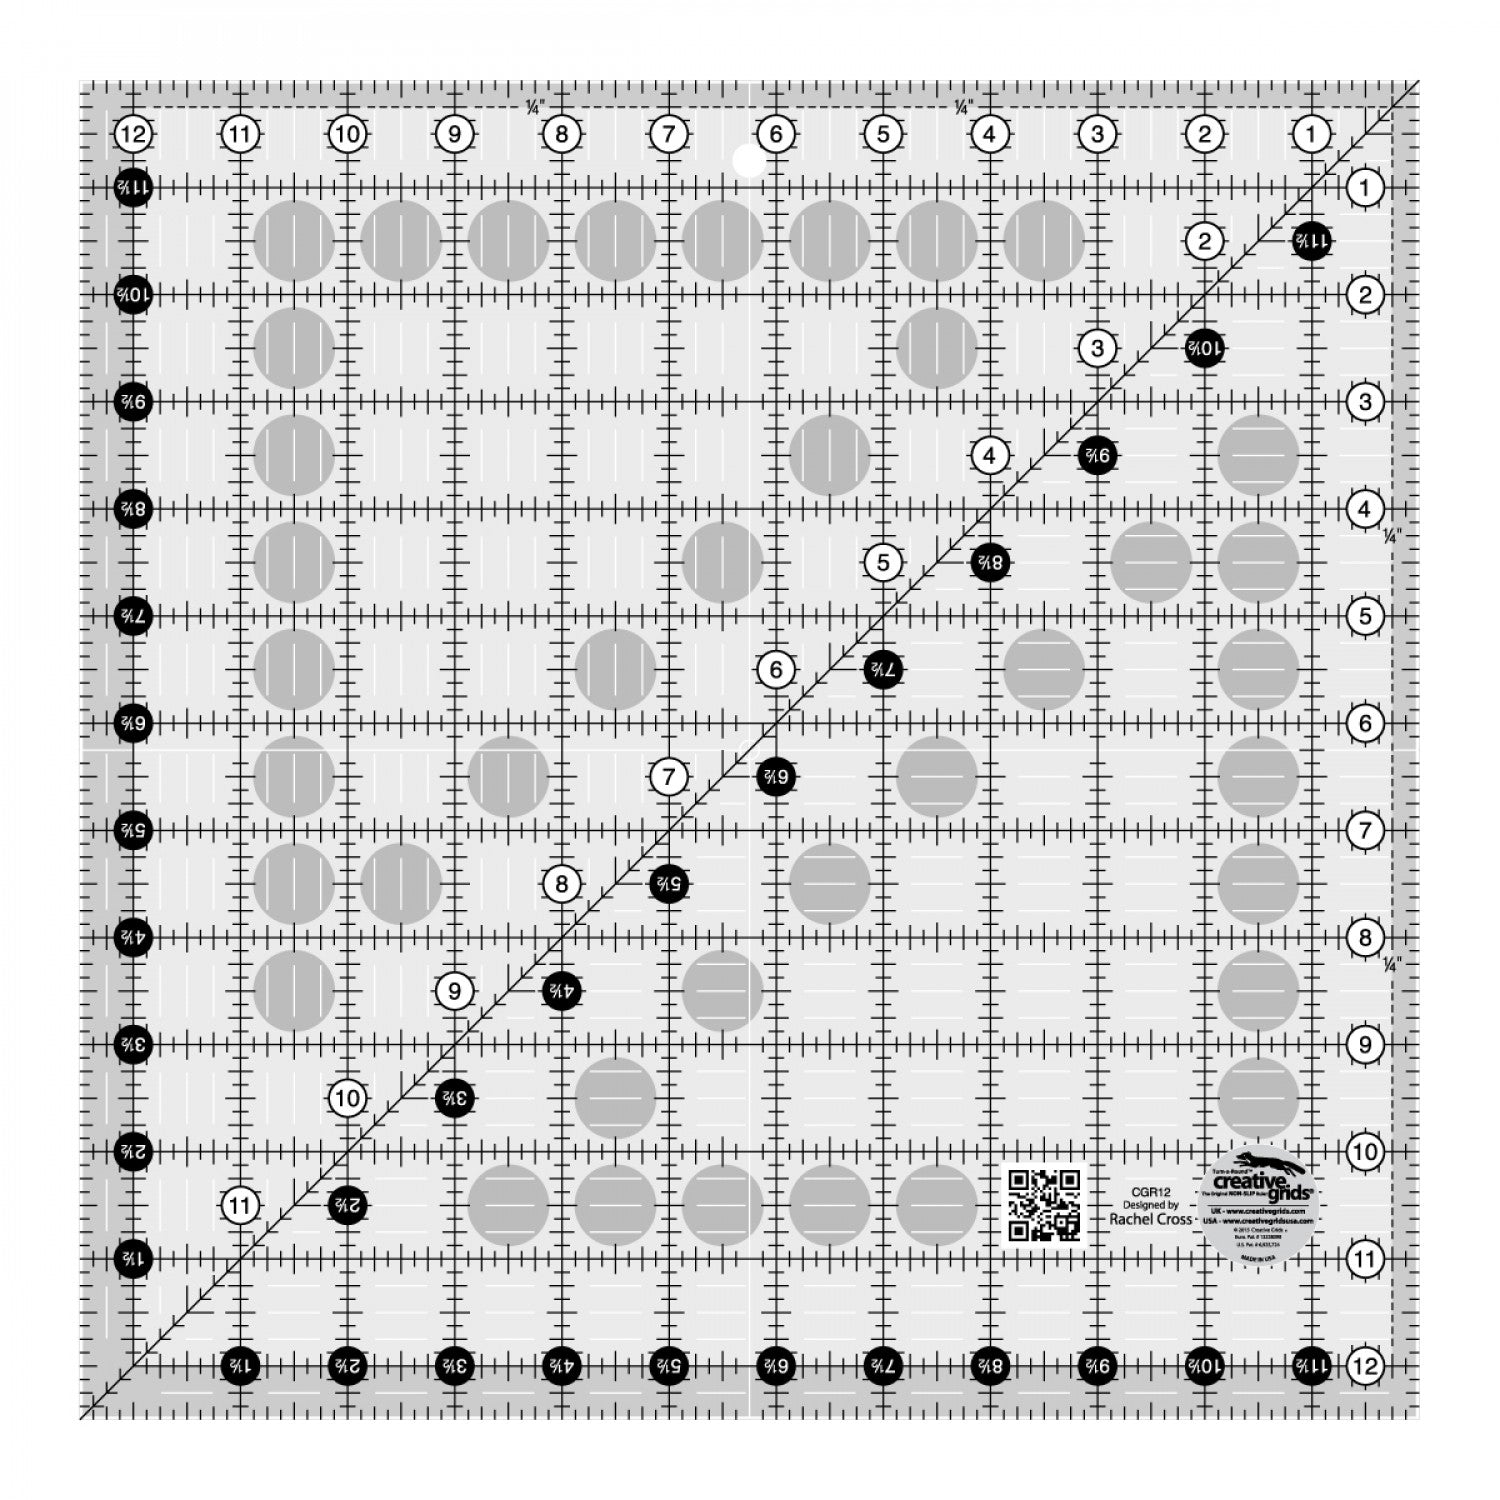 12-1/2" x 12-1/2" Ruler - Creative Grids